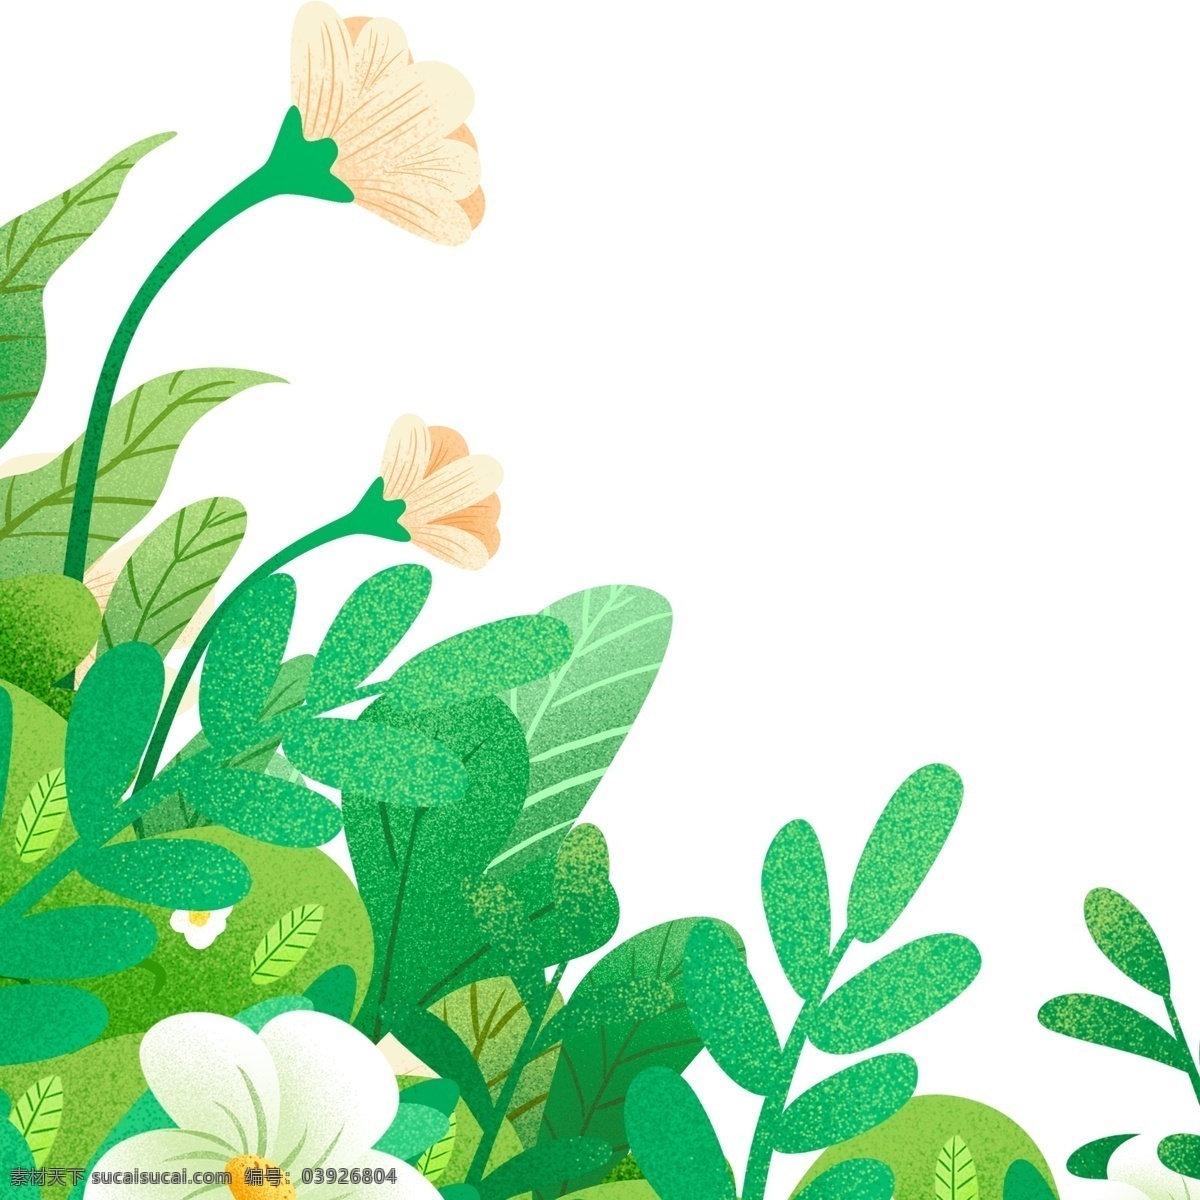 植物 草丛 树叶 装饰 花朵 卡通 彩色 水彩 创意 手绘 绘画元素 现代 简约 图案